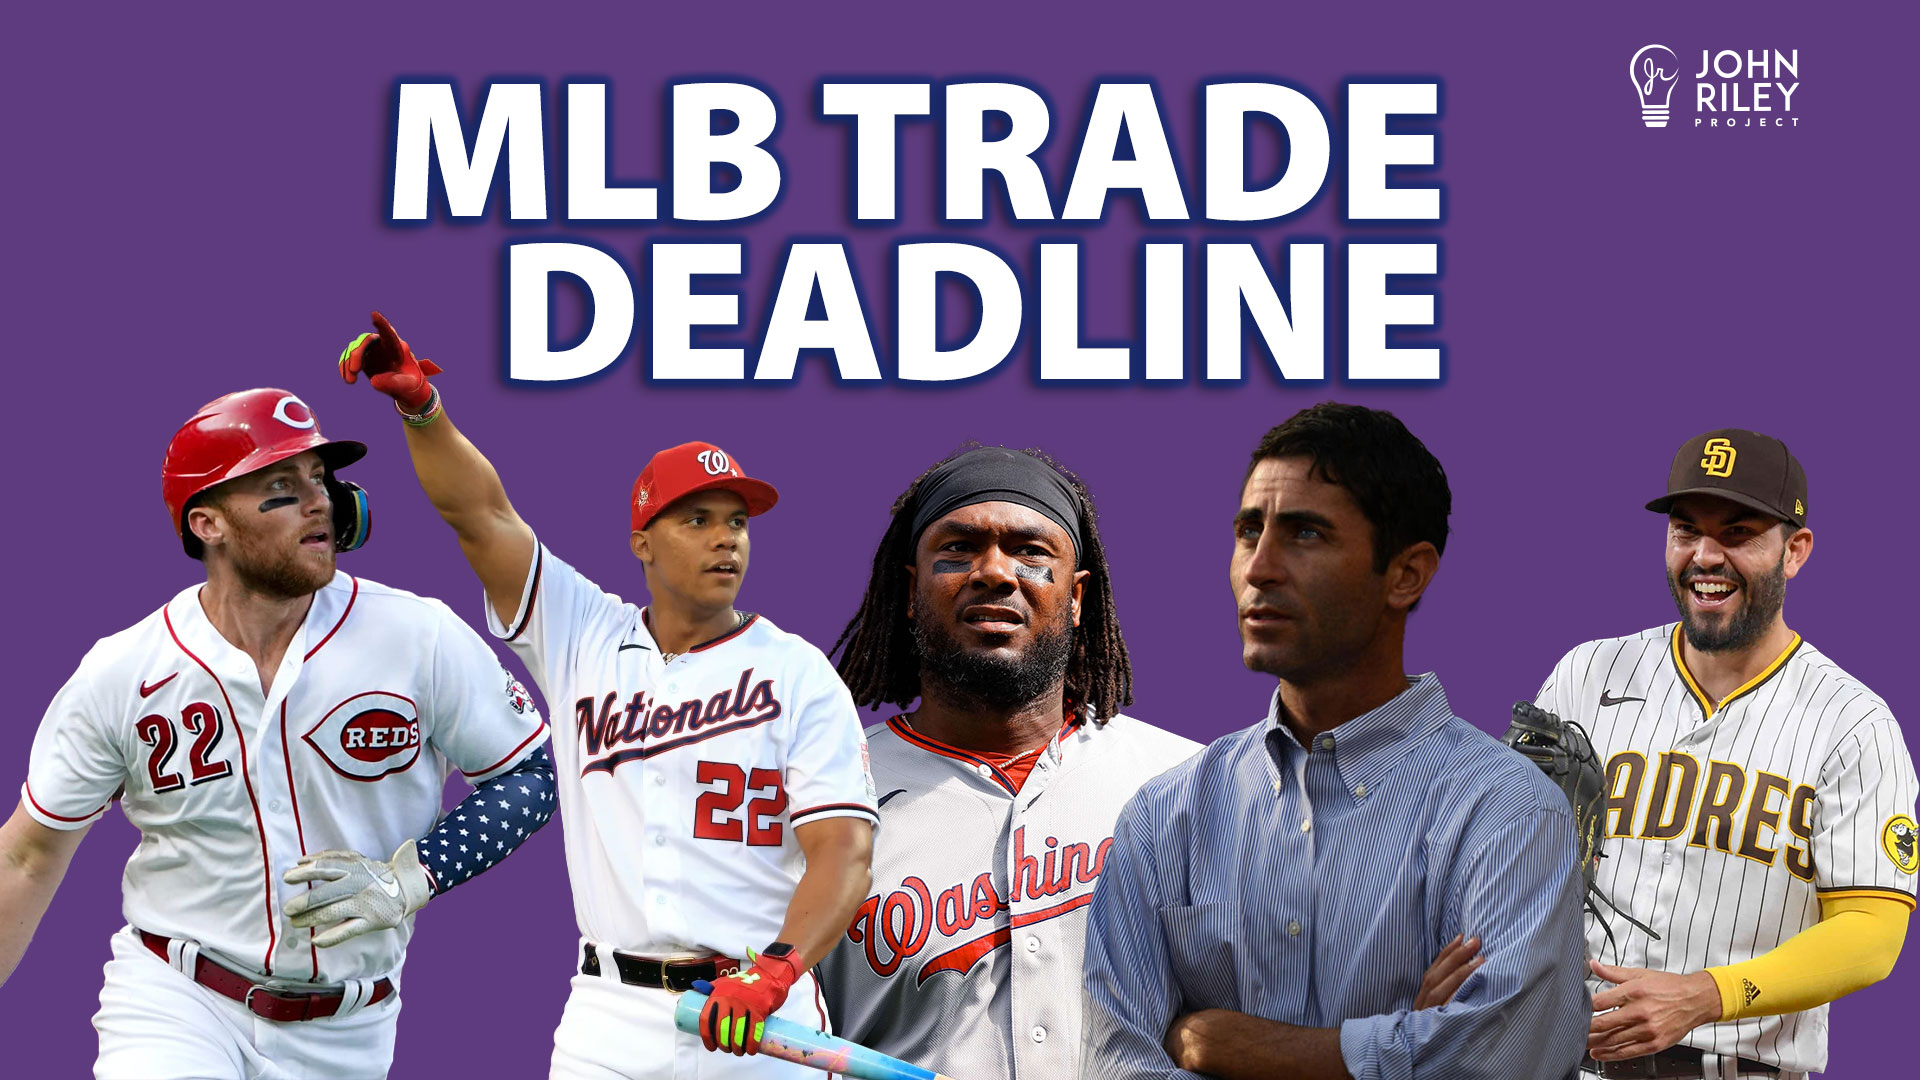 MLB Trade Deadline, John Riley Project